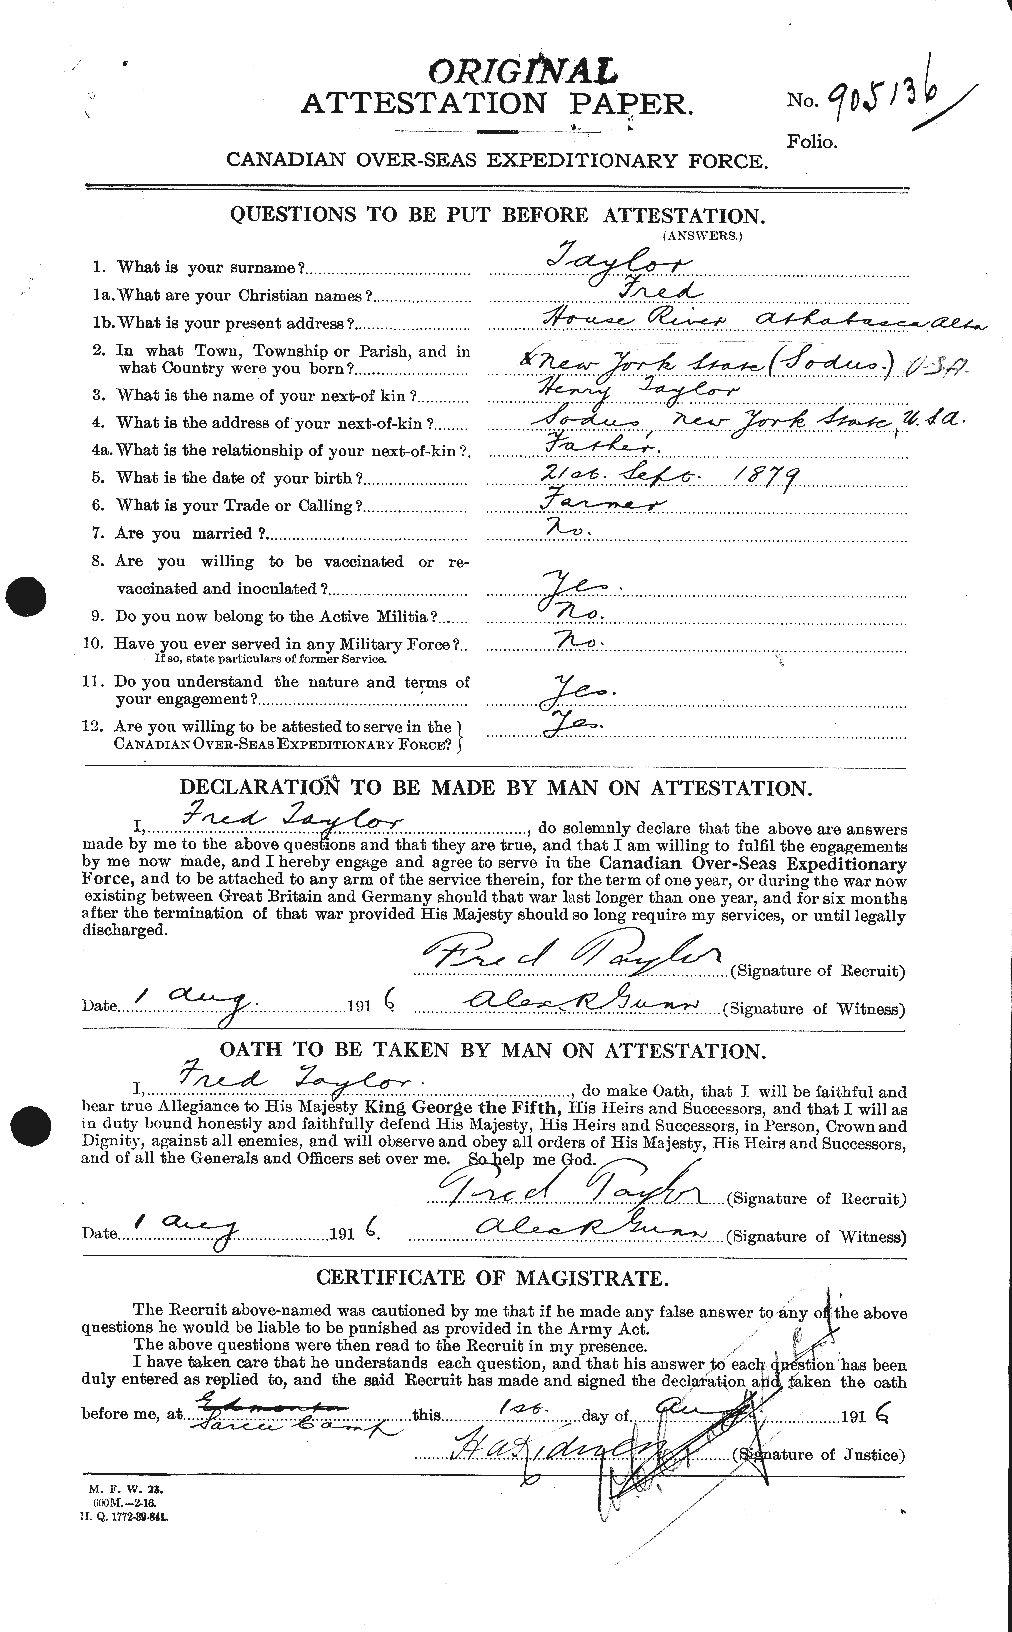 Dossiers du Personnel de la Première Guerre mondiale - CEC 625740a